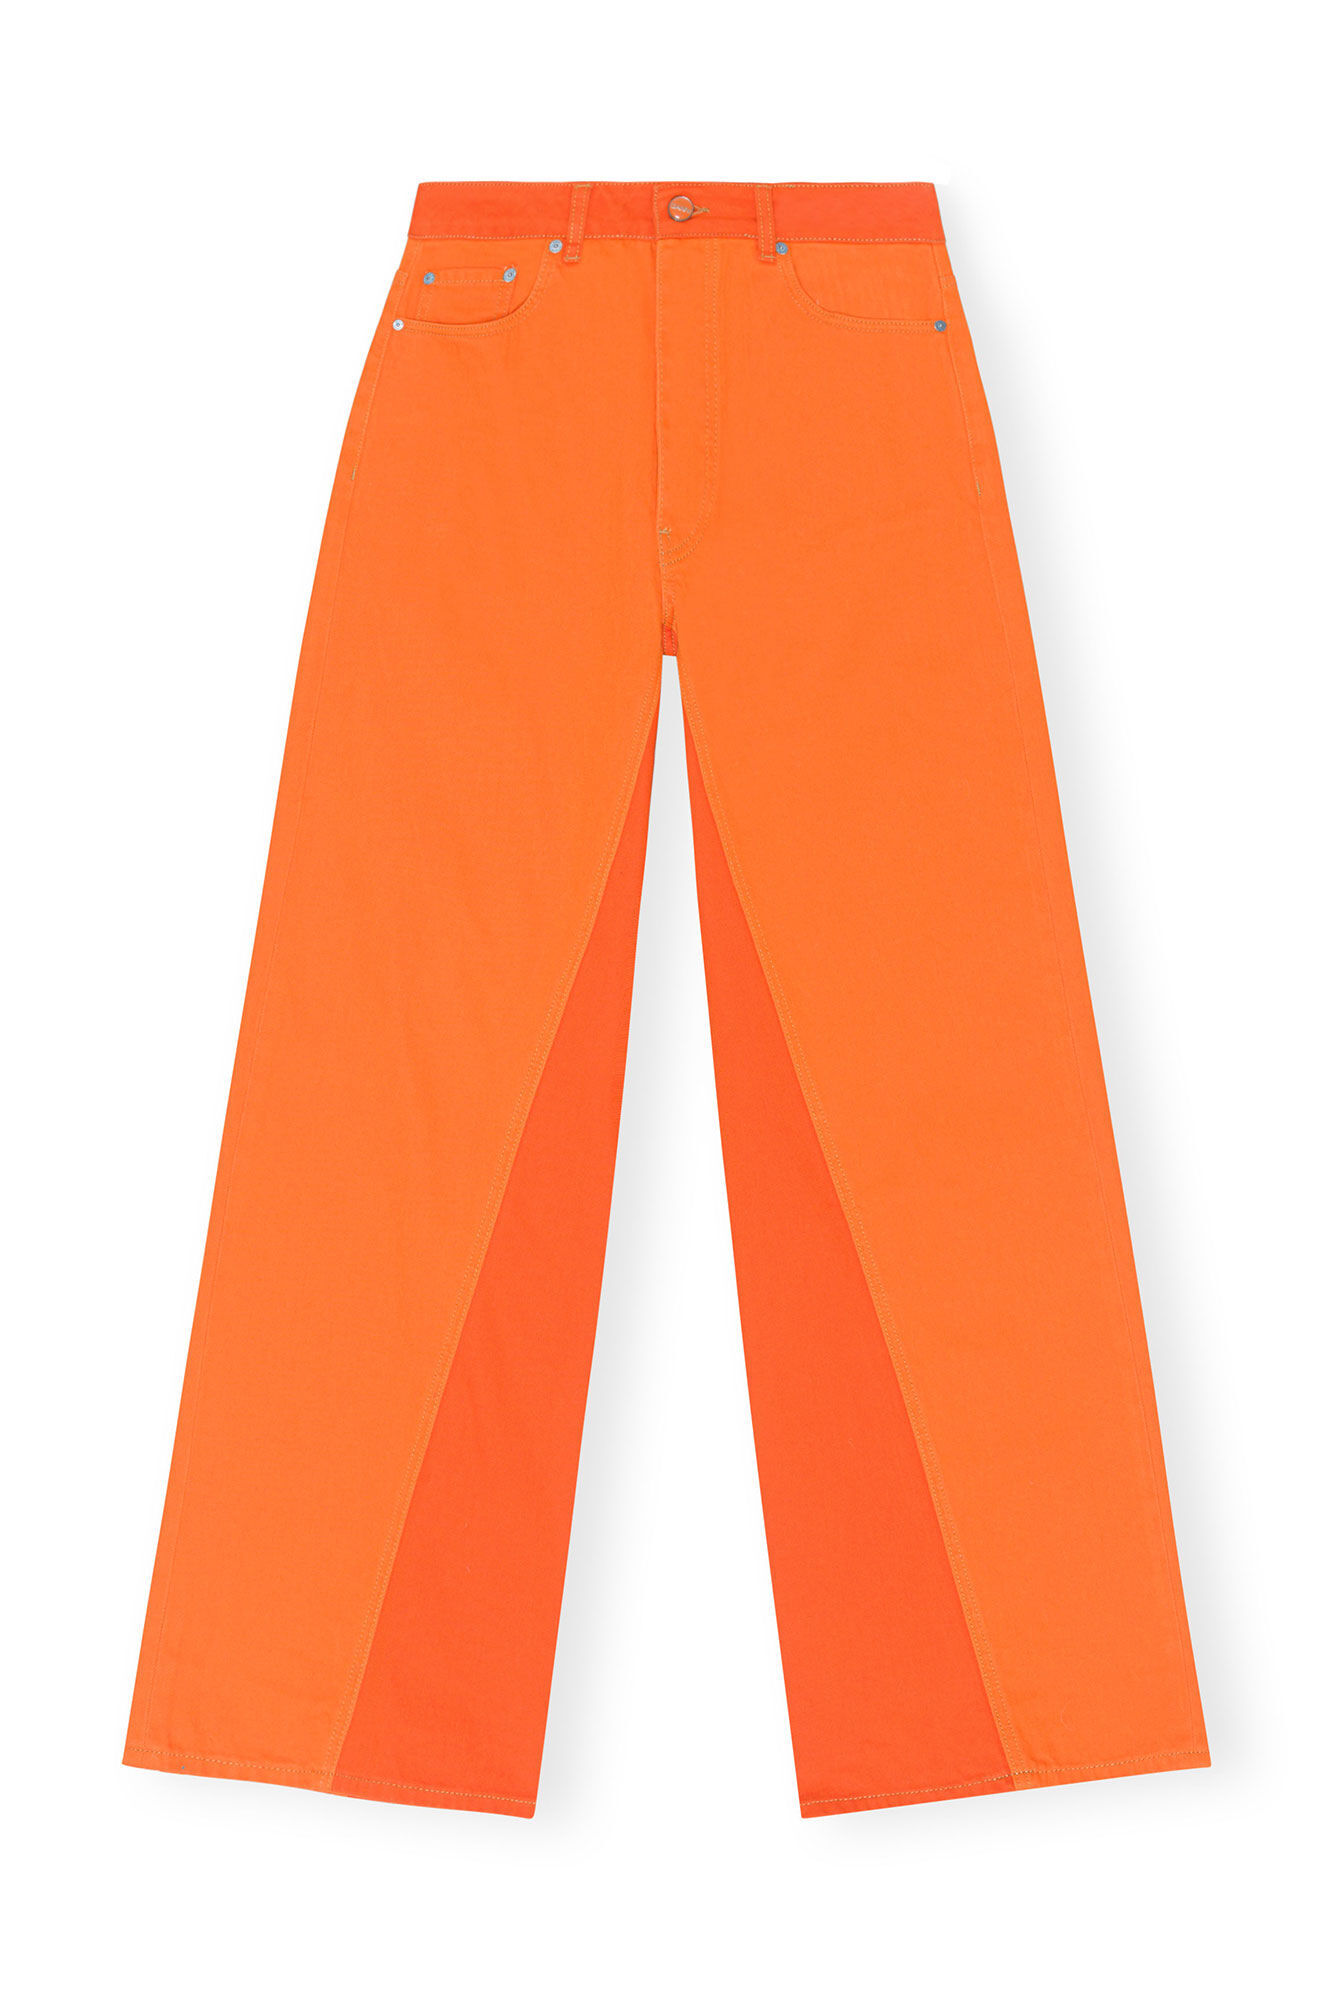 Pantalones naranjas con contraste